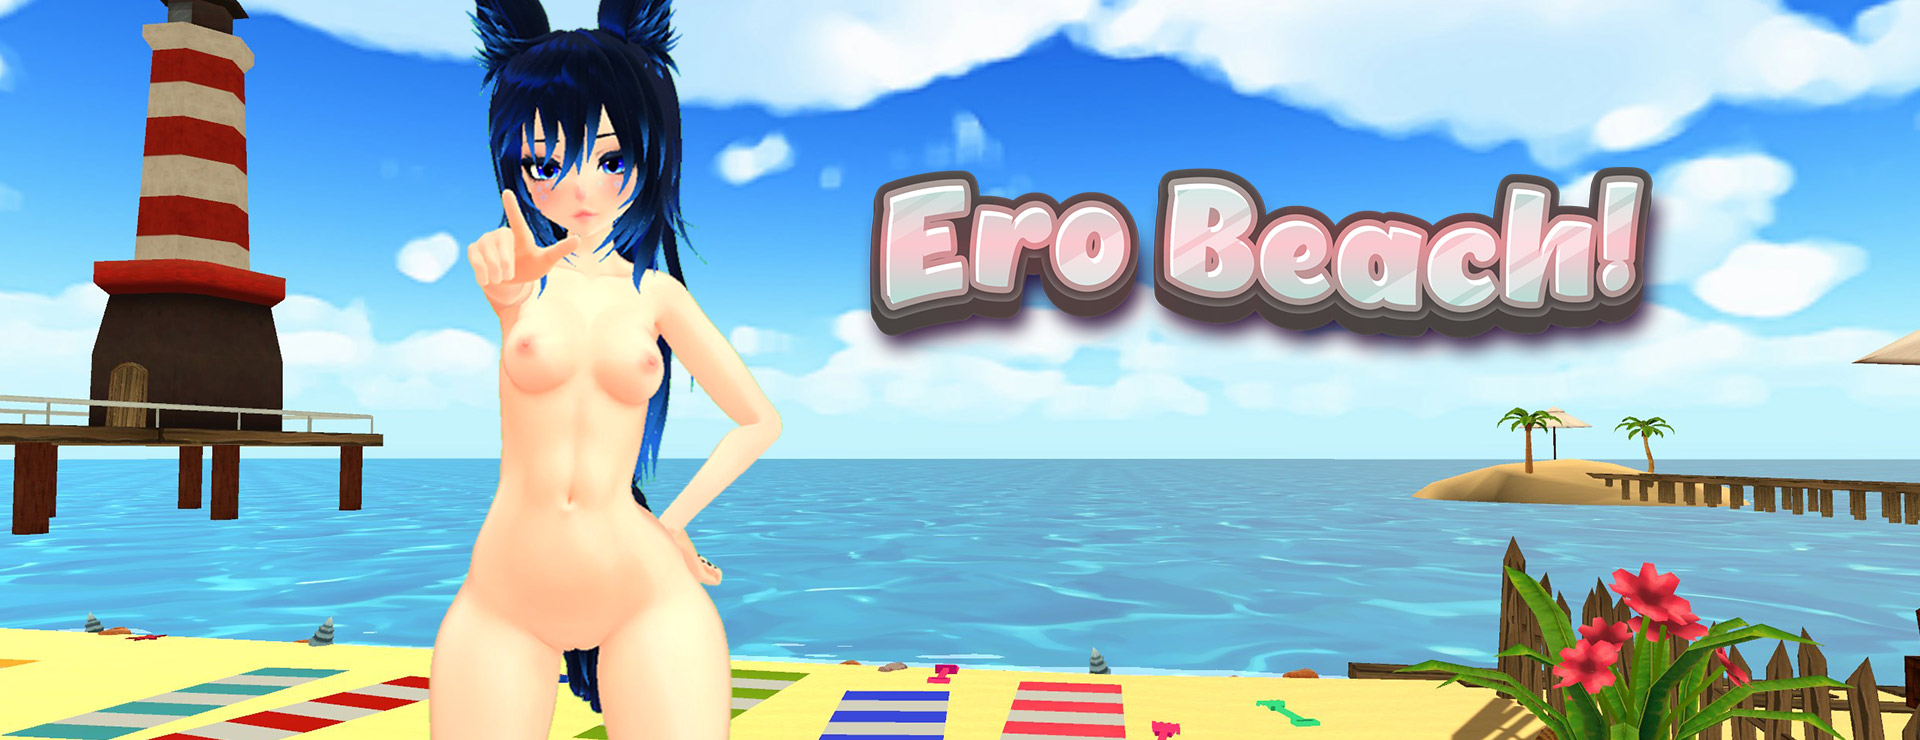 Ero Beach! - シミュレーション ゲーム